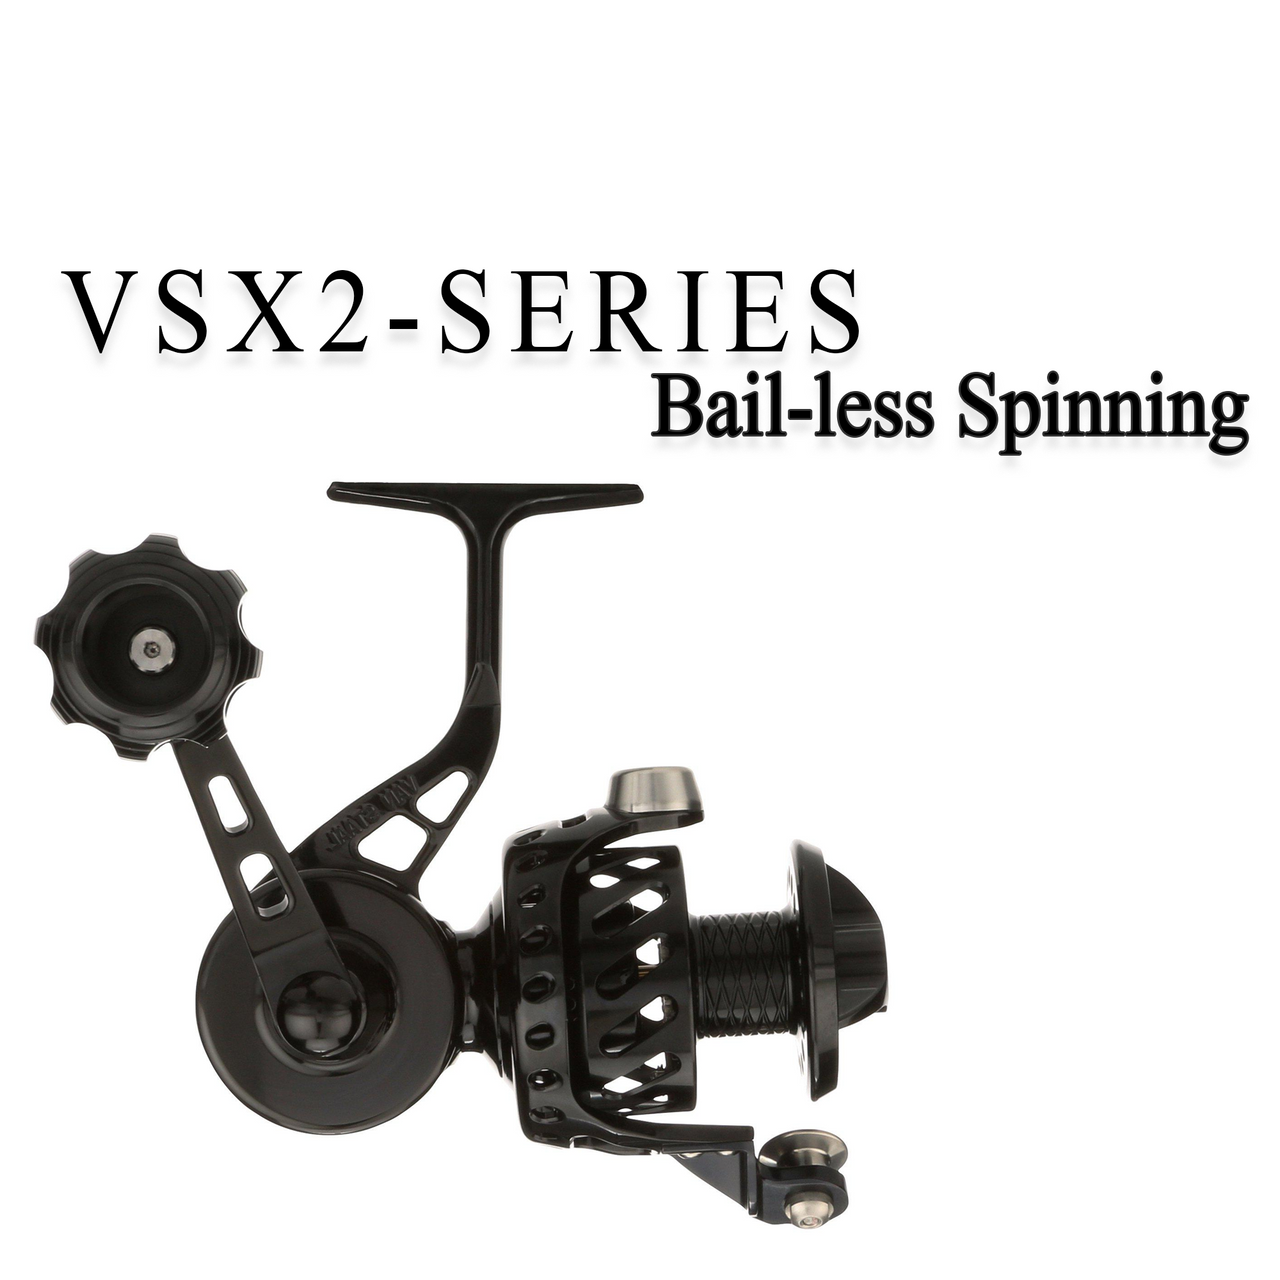 Van Staal VSX2-Series Bail-less VS200 Spinning Reel